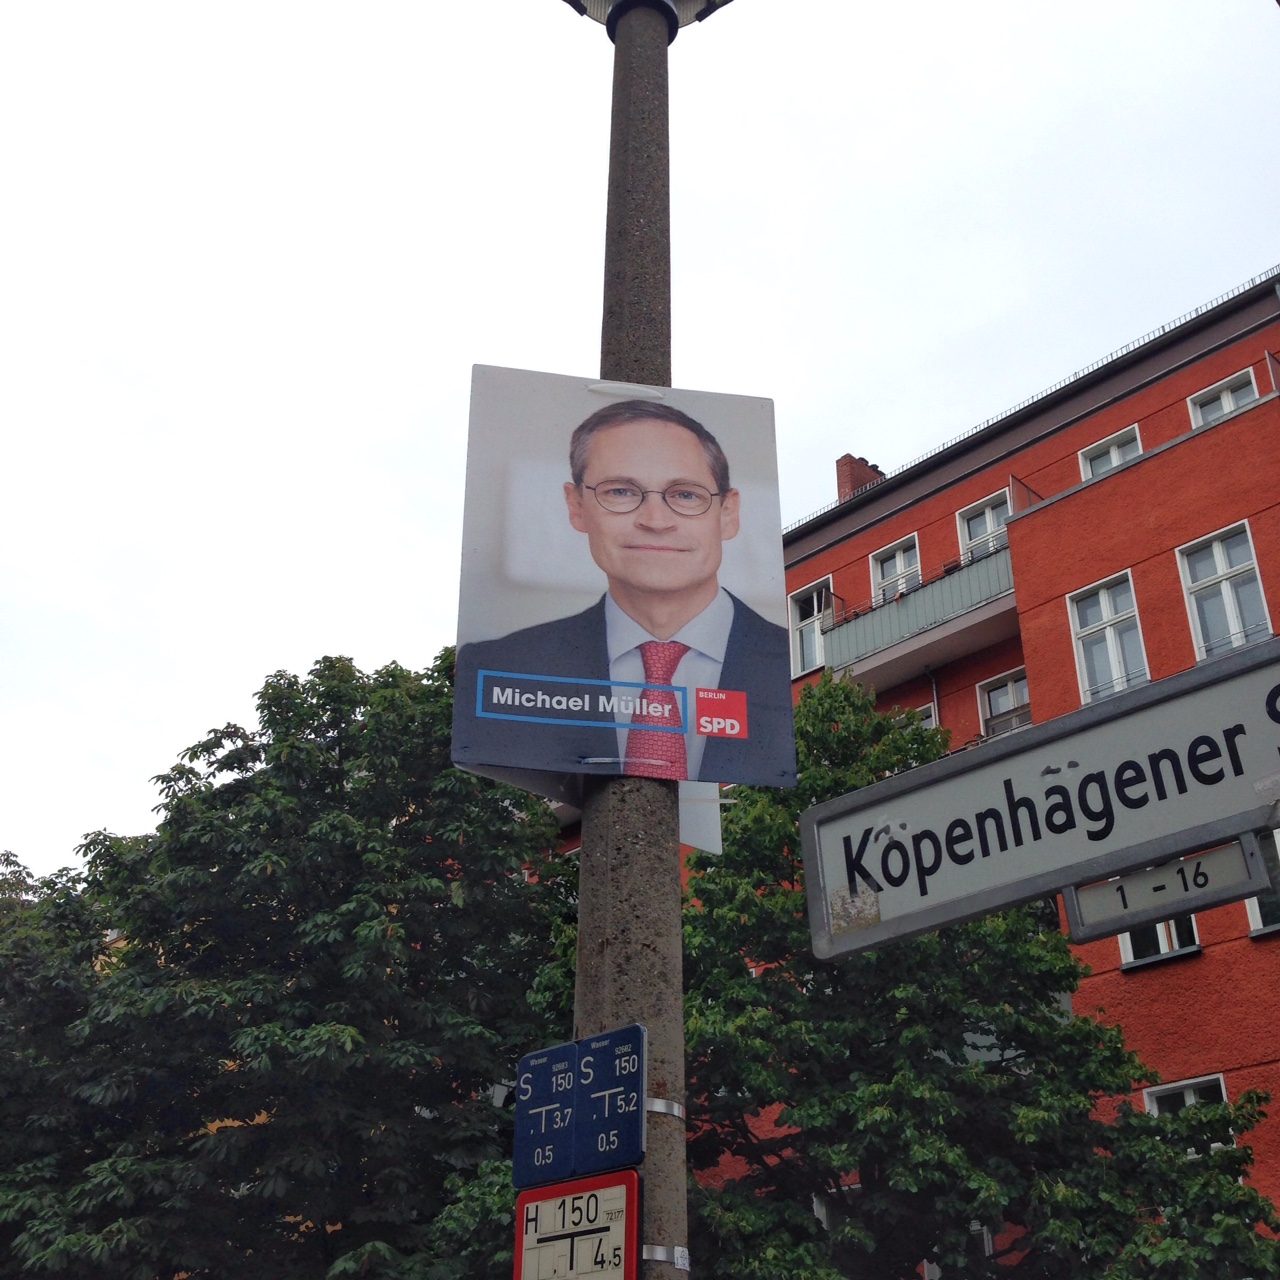 ポスターデザインに見る、ベルリンの市議会選挙。_f0207434_8173857.jpg